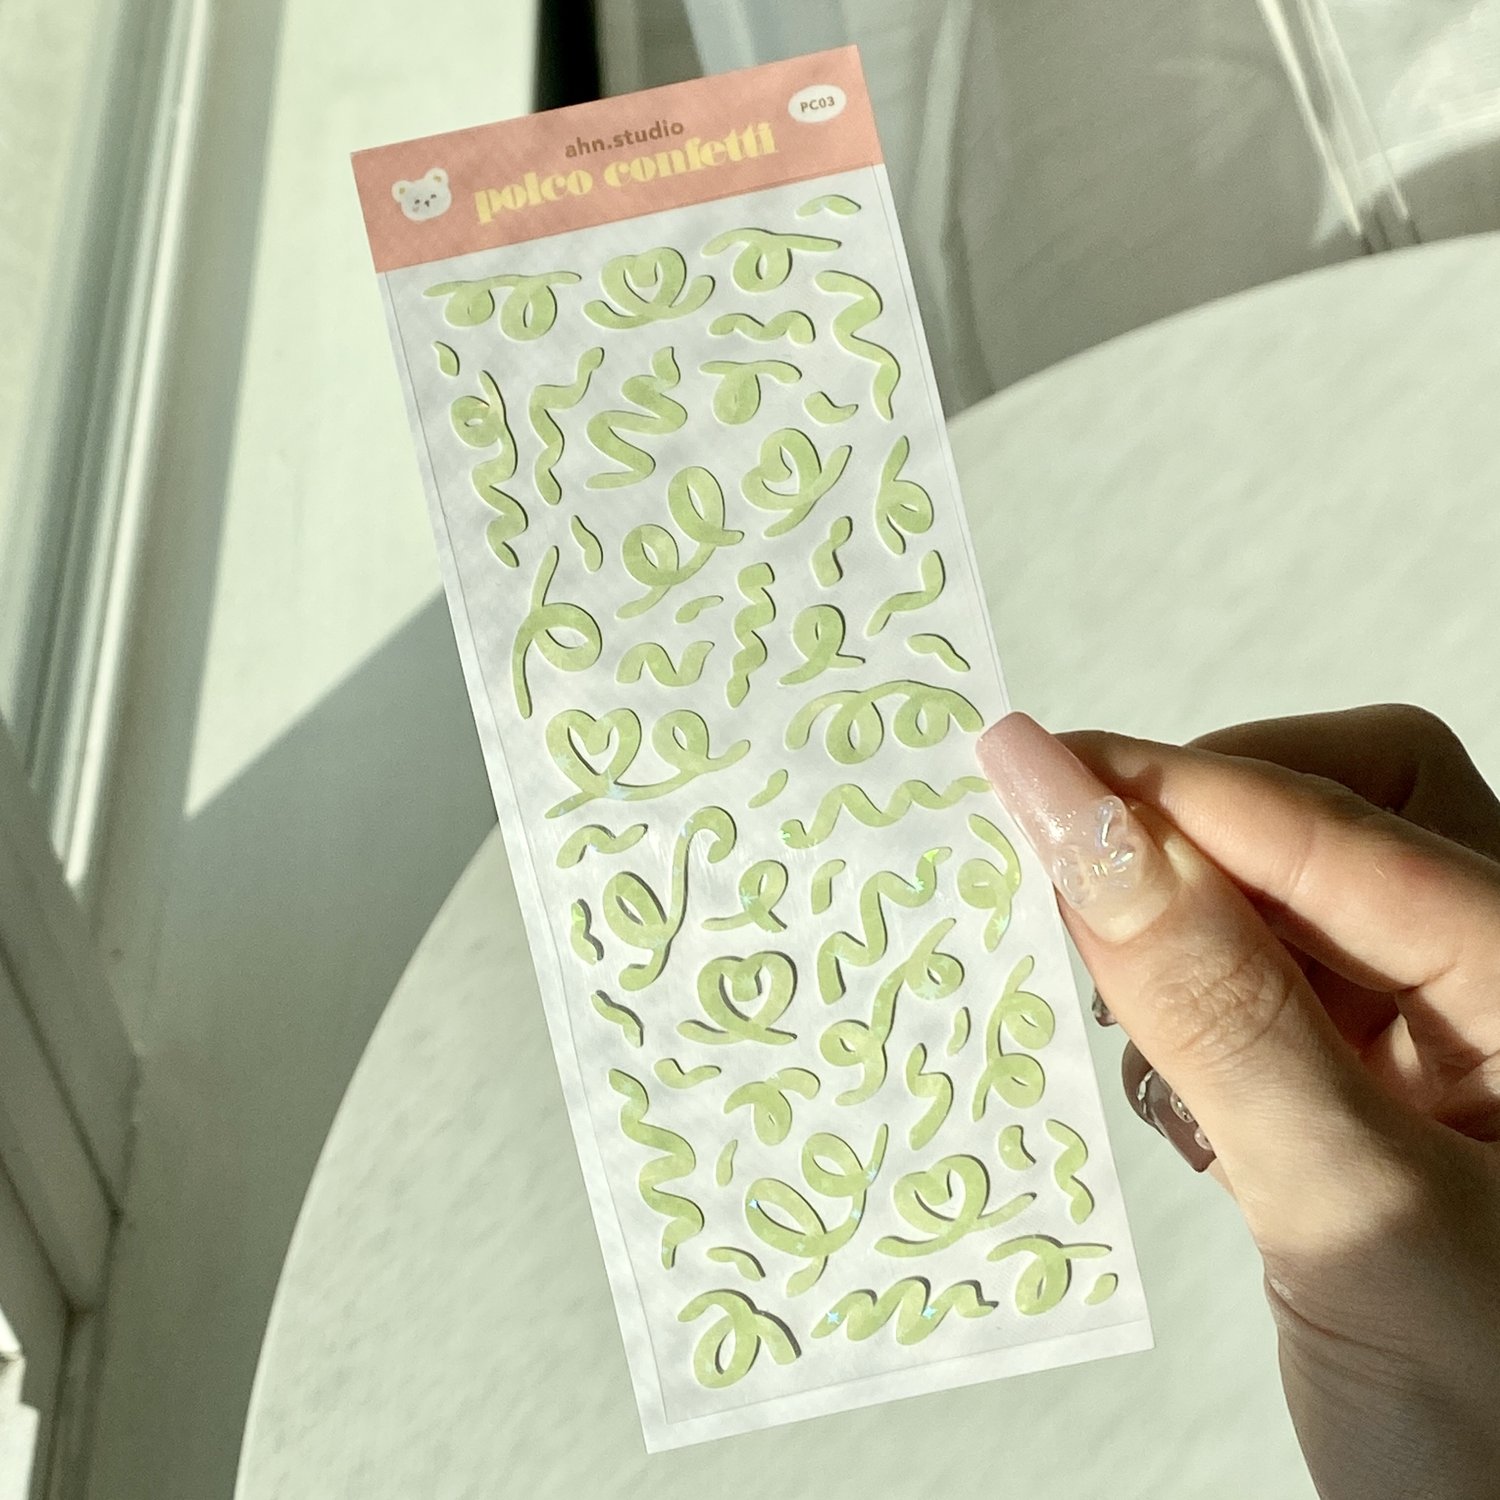 Ribbon Confetti Sticker Sheet KPop Polco Deco Stickers - 2 Pack